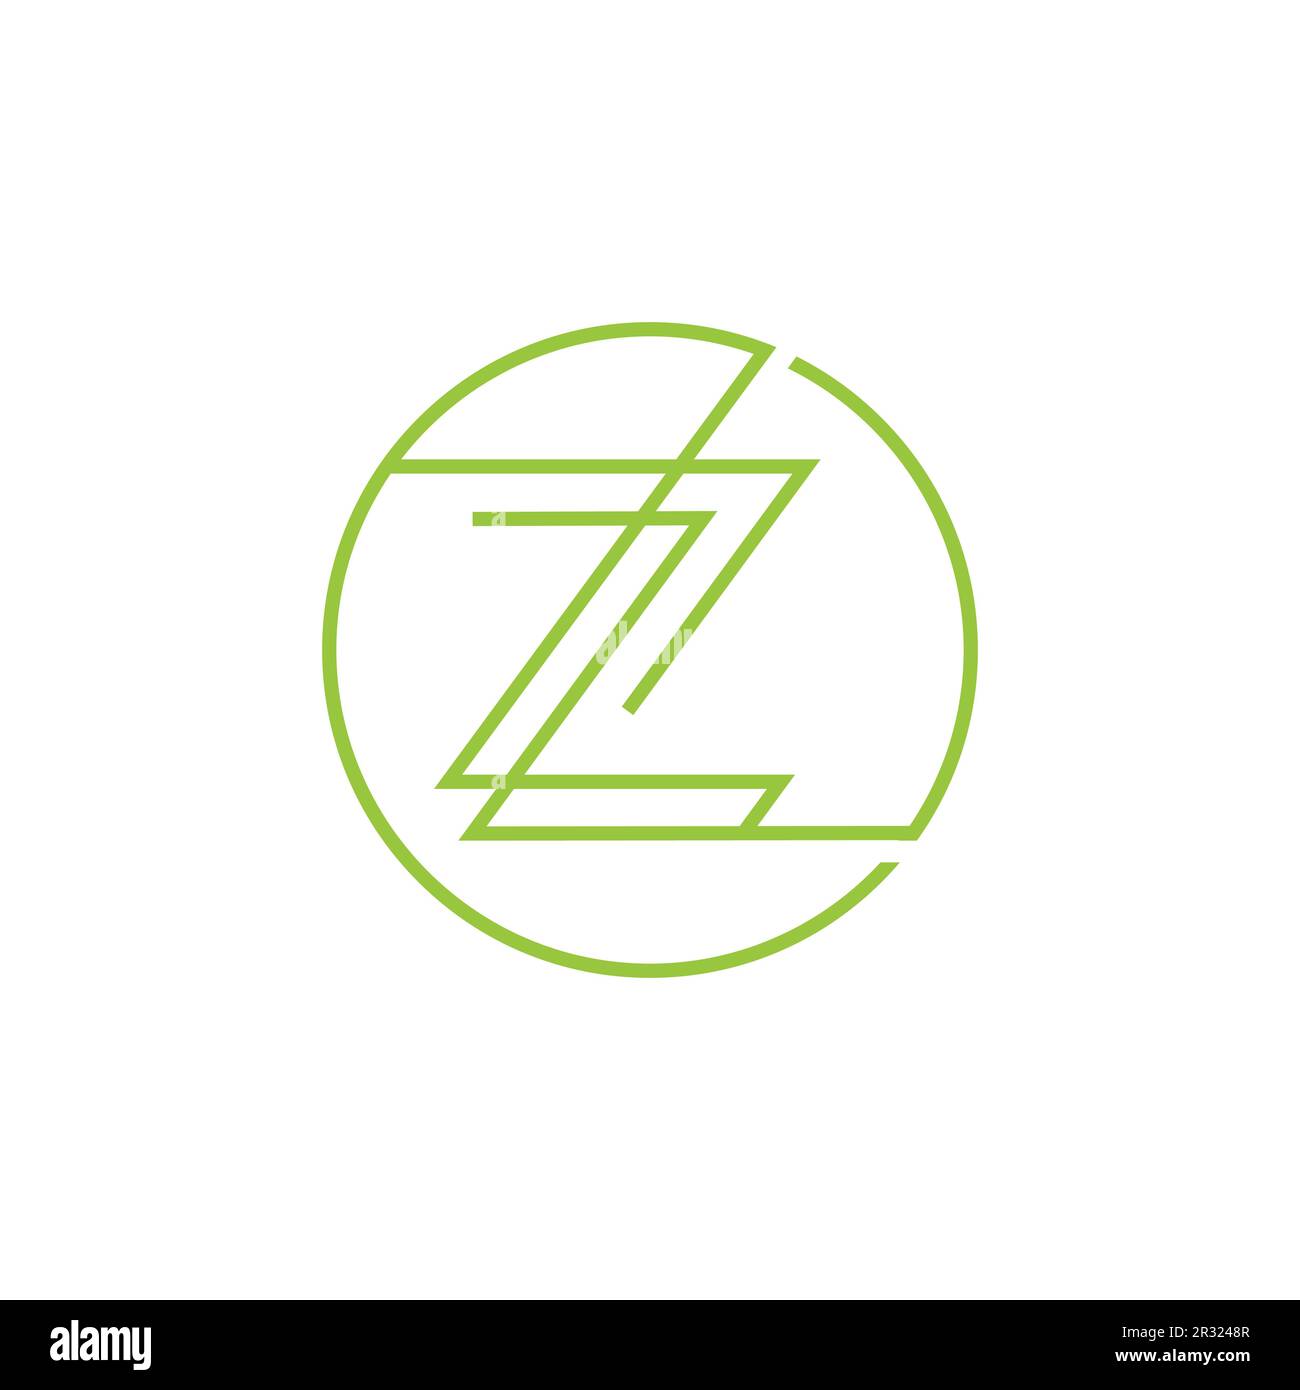 Design mit Z-Motiv und Spa-Logo. Kreativer abstrakter Z-Buchstabe in einer kreisförmigen Form mit Liniendesign. Luxuriöses und elegantes Logo Stock Vektor